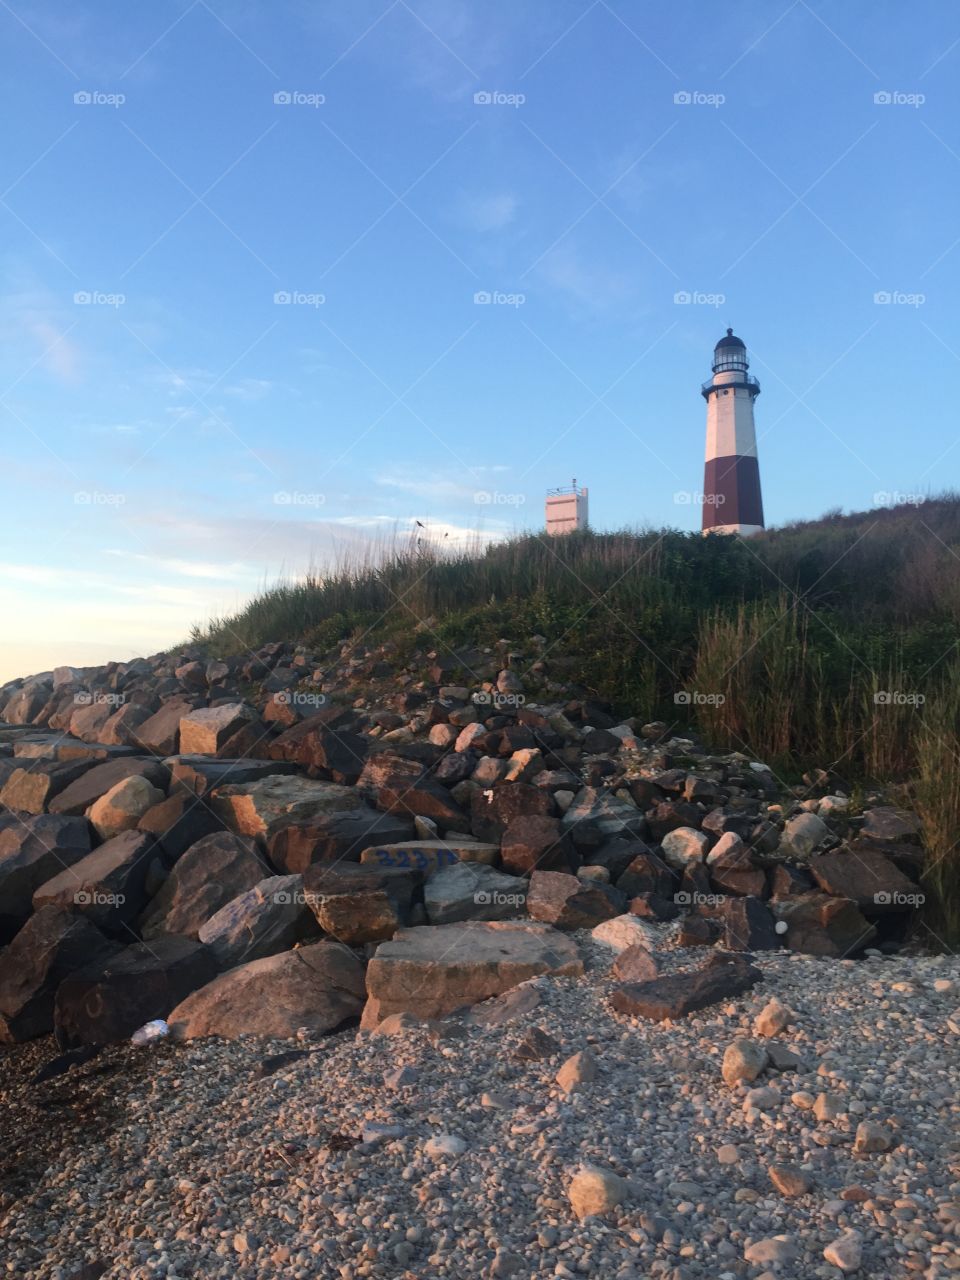 The rocks at Montauk Lighthouse in Montauk, NY